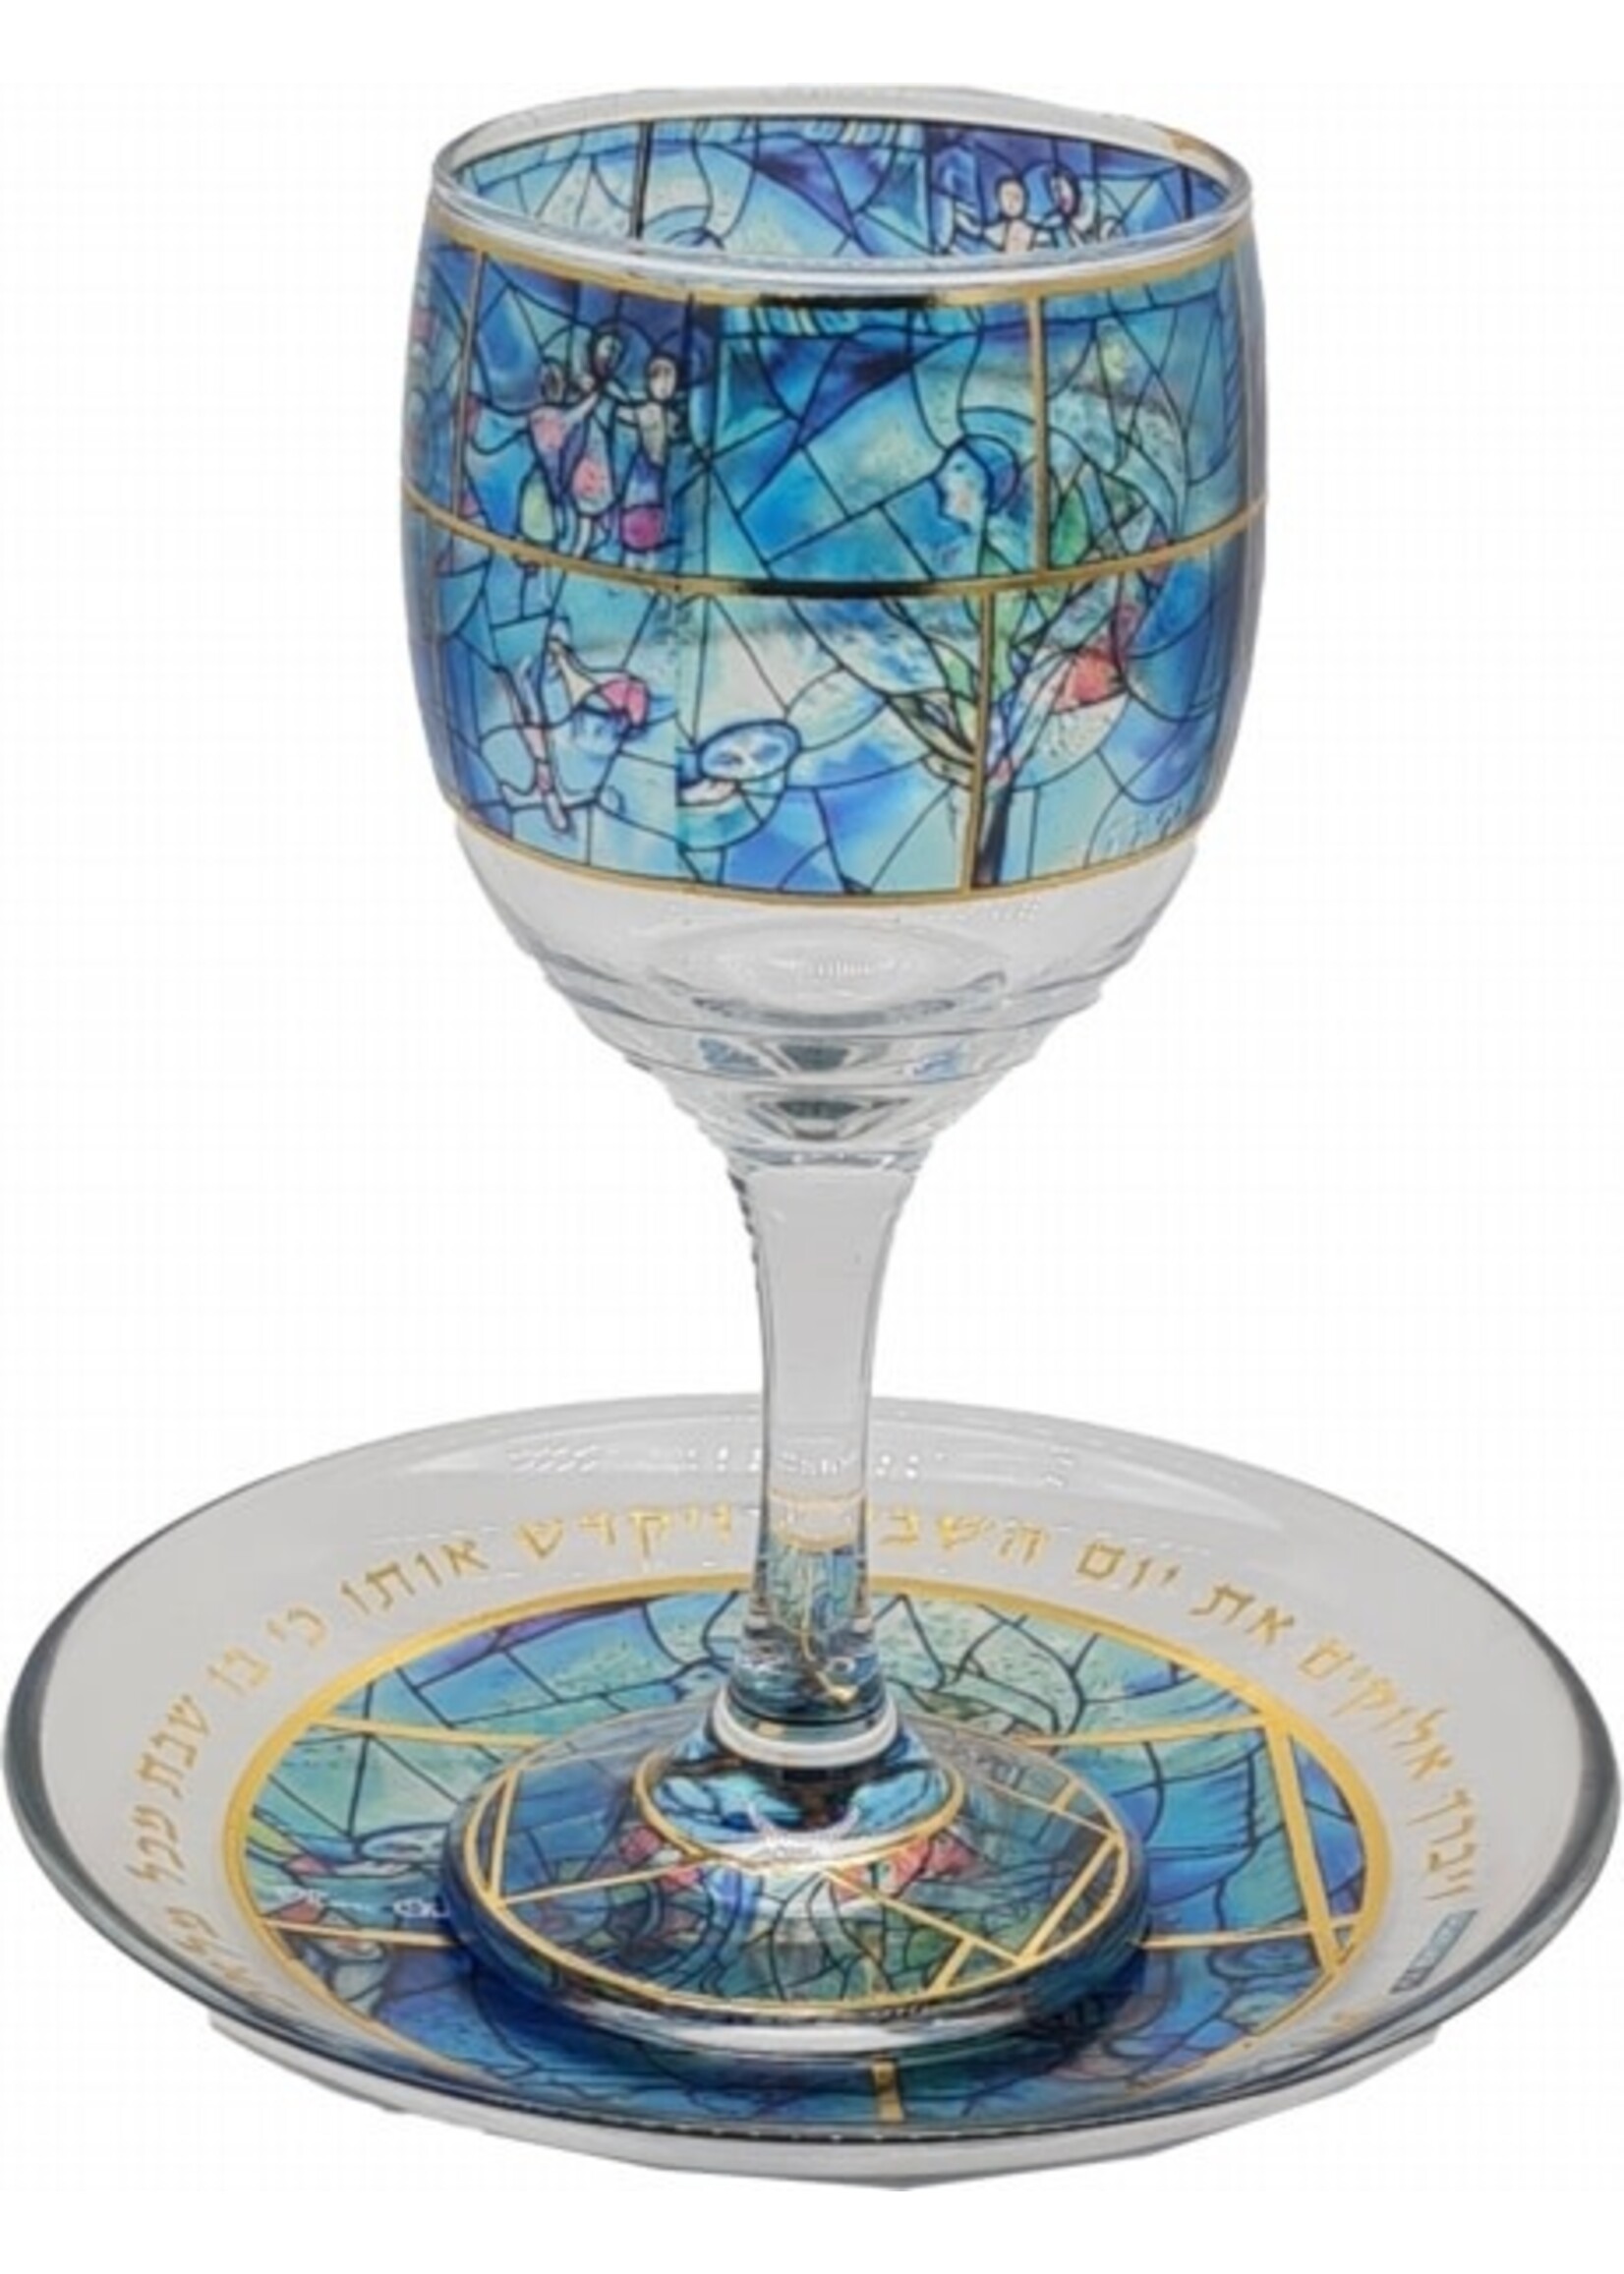 KIDDUSH CUP STEM  GLASS - CHAGALL BLUES